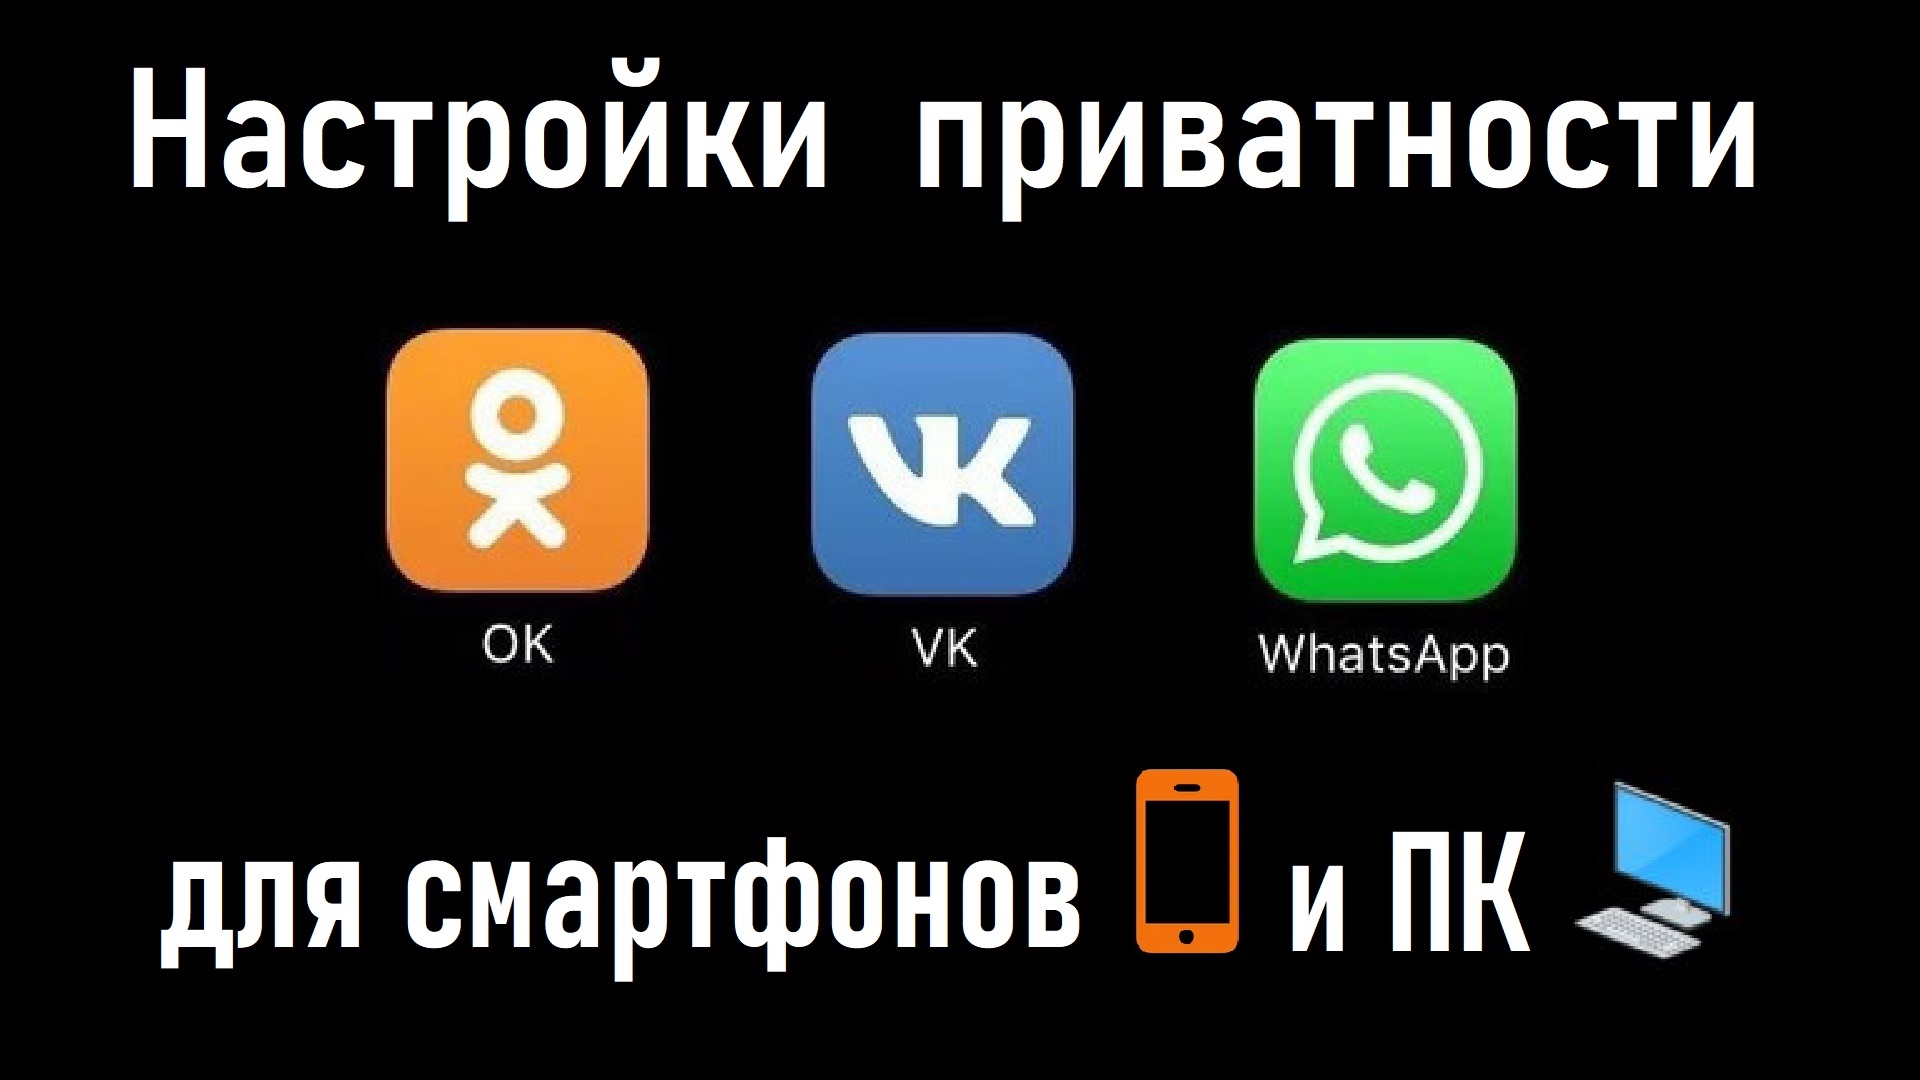 Настройки приватности ВКонтакте, Одноклассники и WhatsApp*! Ограничение сообщений от незнакомцев!